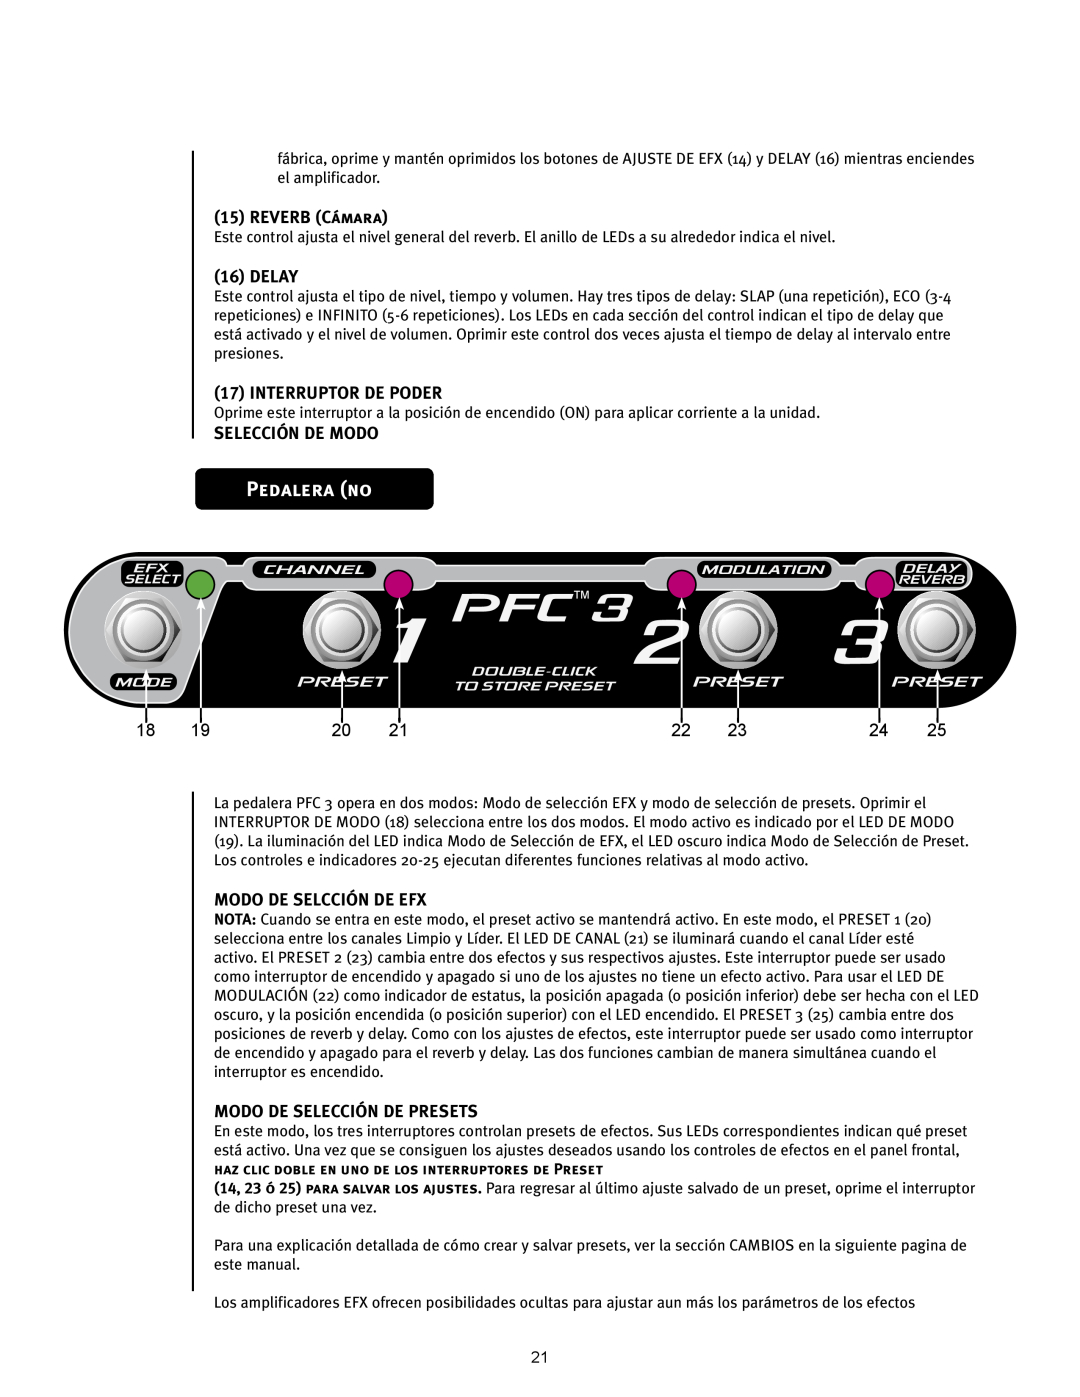 Peavey 110 EFX Pedalera no, PFCTM3, REVERB Cámara, Delay, Interruptor De Poder, Selección De Modo, Modo De Selcción De Efx 